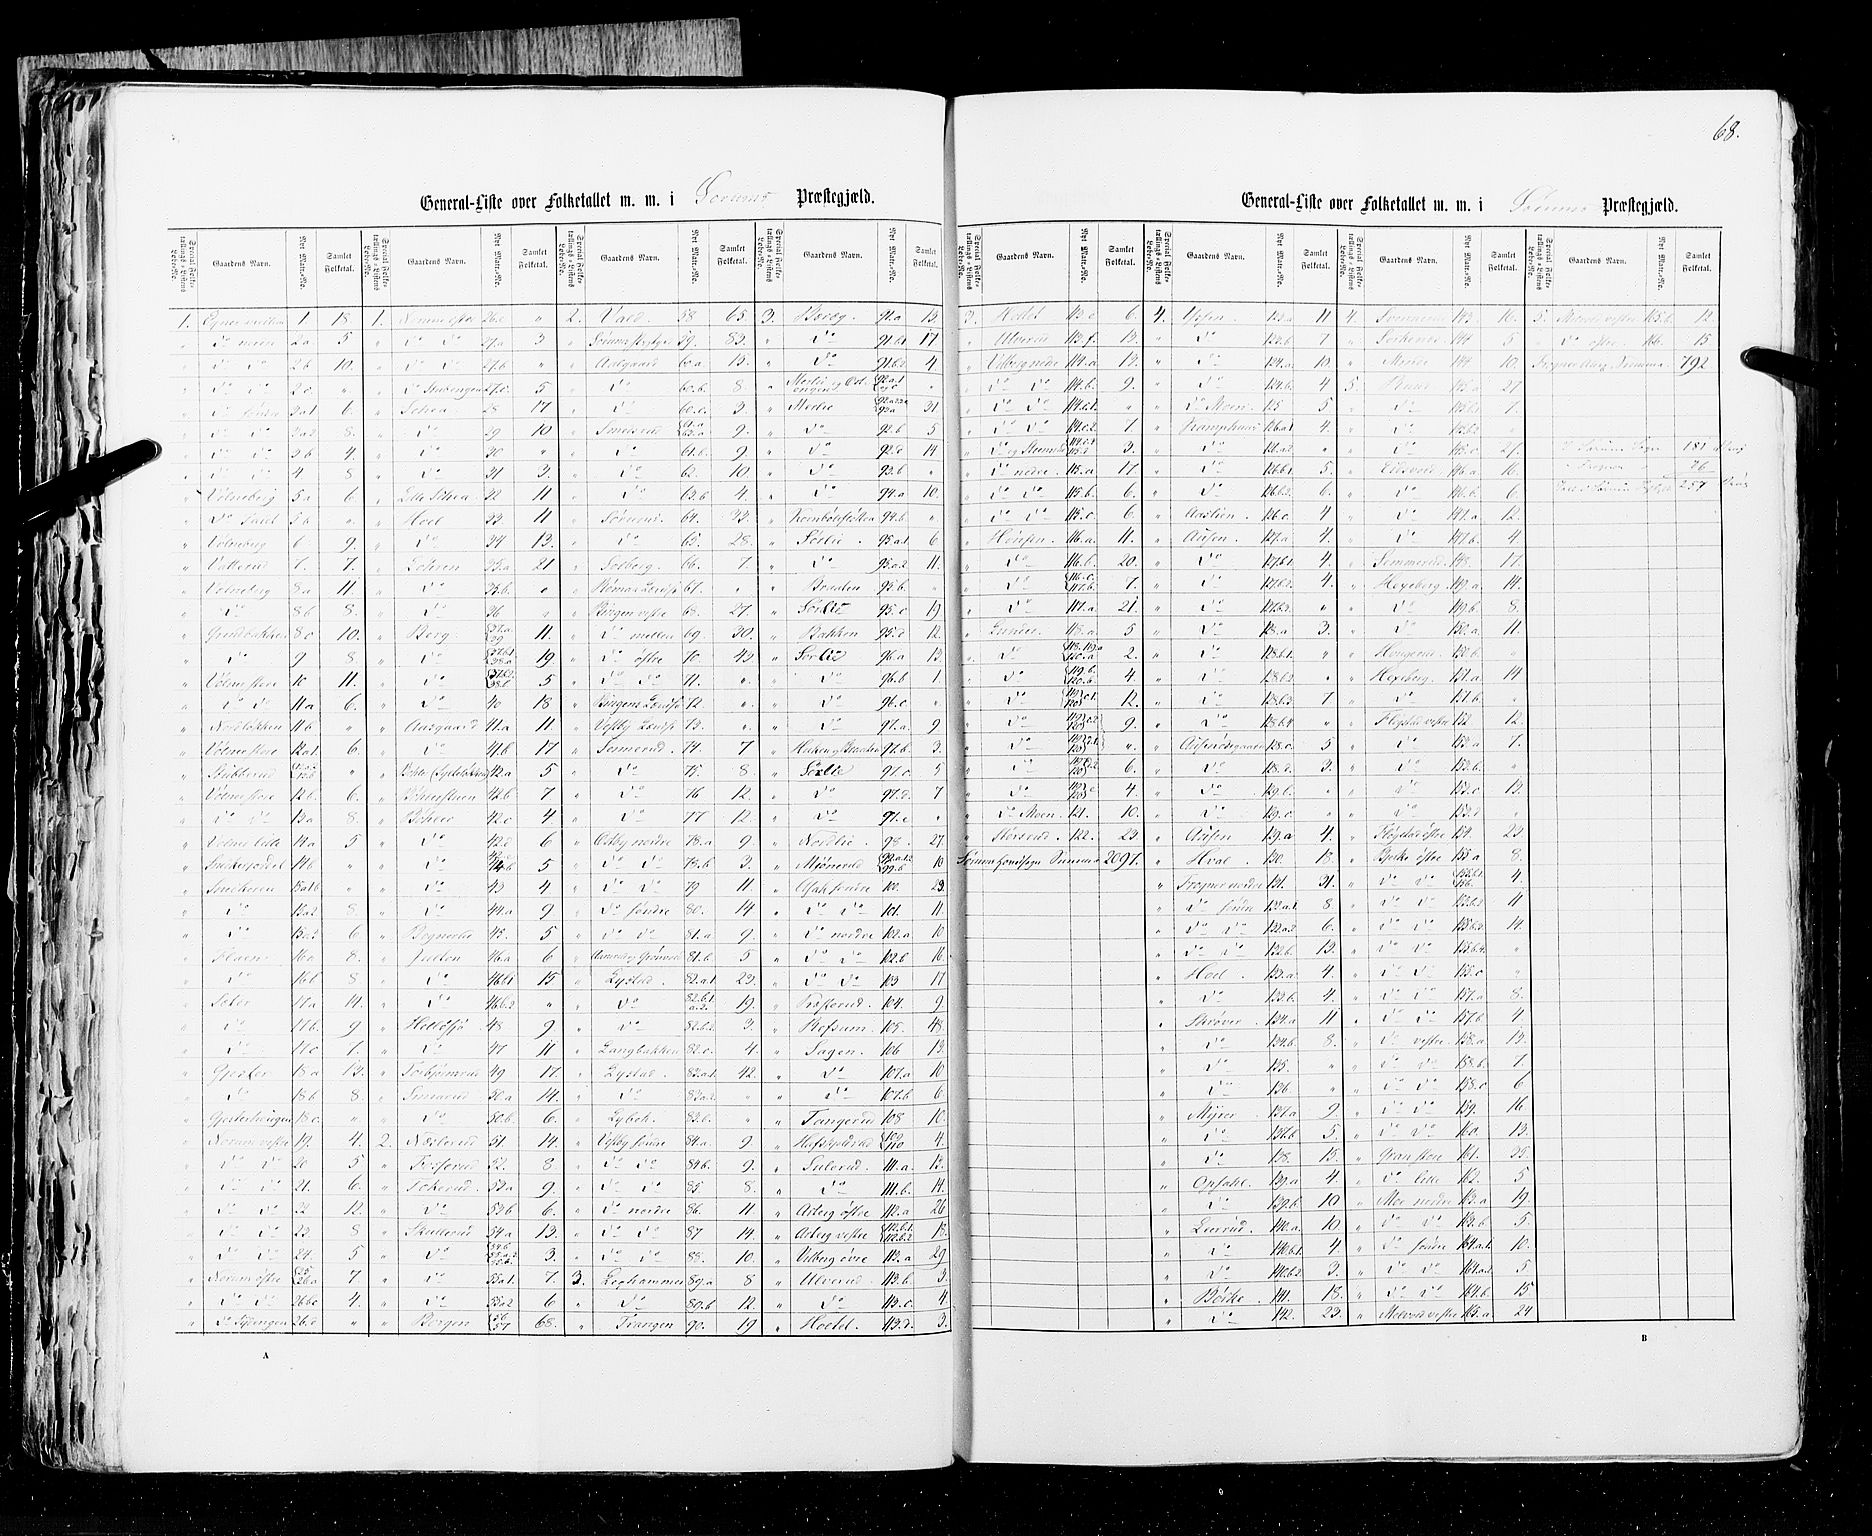 RA, Census 1855, vol. 1: Akershus amt, Smålenenes amt og Hedemarken amt, 1855, p. 68